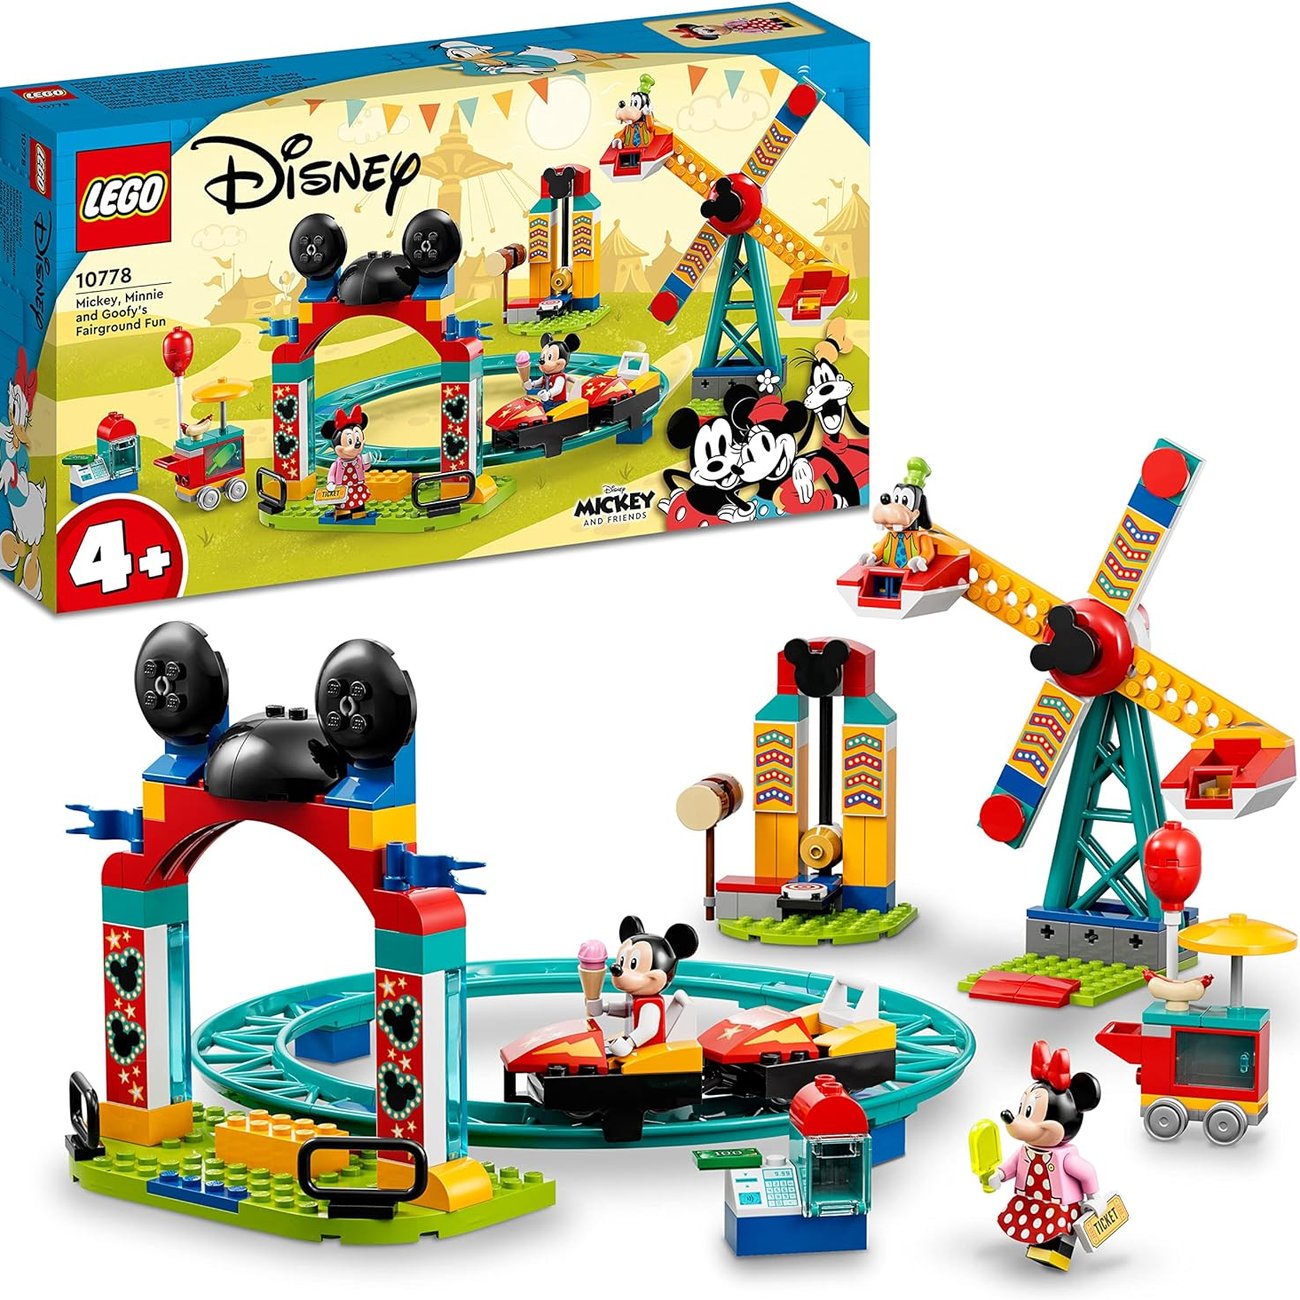 LEGO 10778 Mickey and Friends Micky, Minnie und Goofy auf dem Jahrmarkt